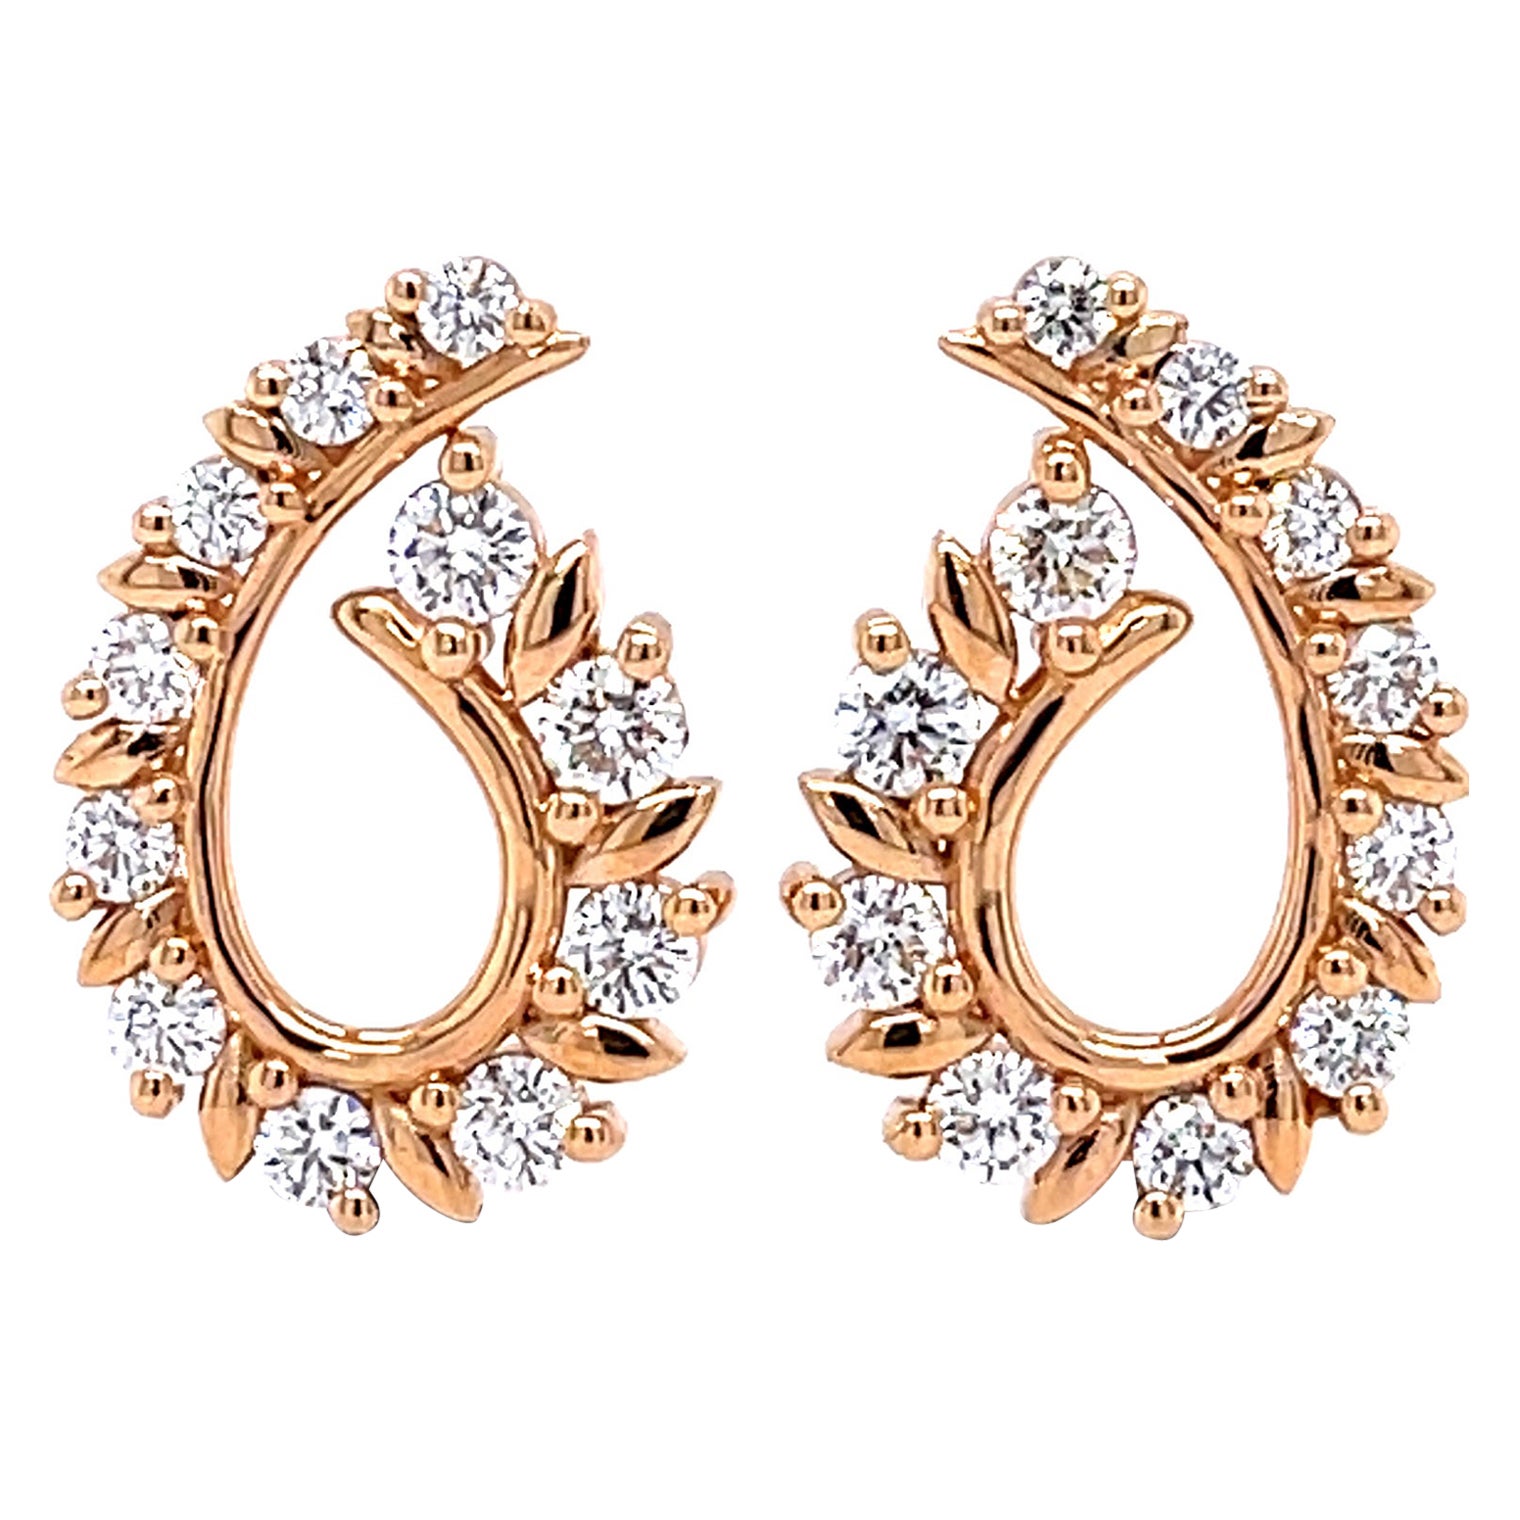 1.45 TCW Diamond Earrings in 18K Rose Gold For Sale